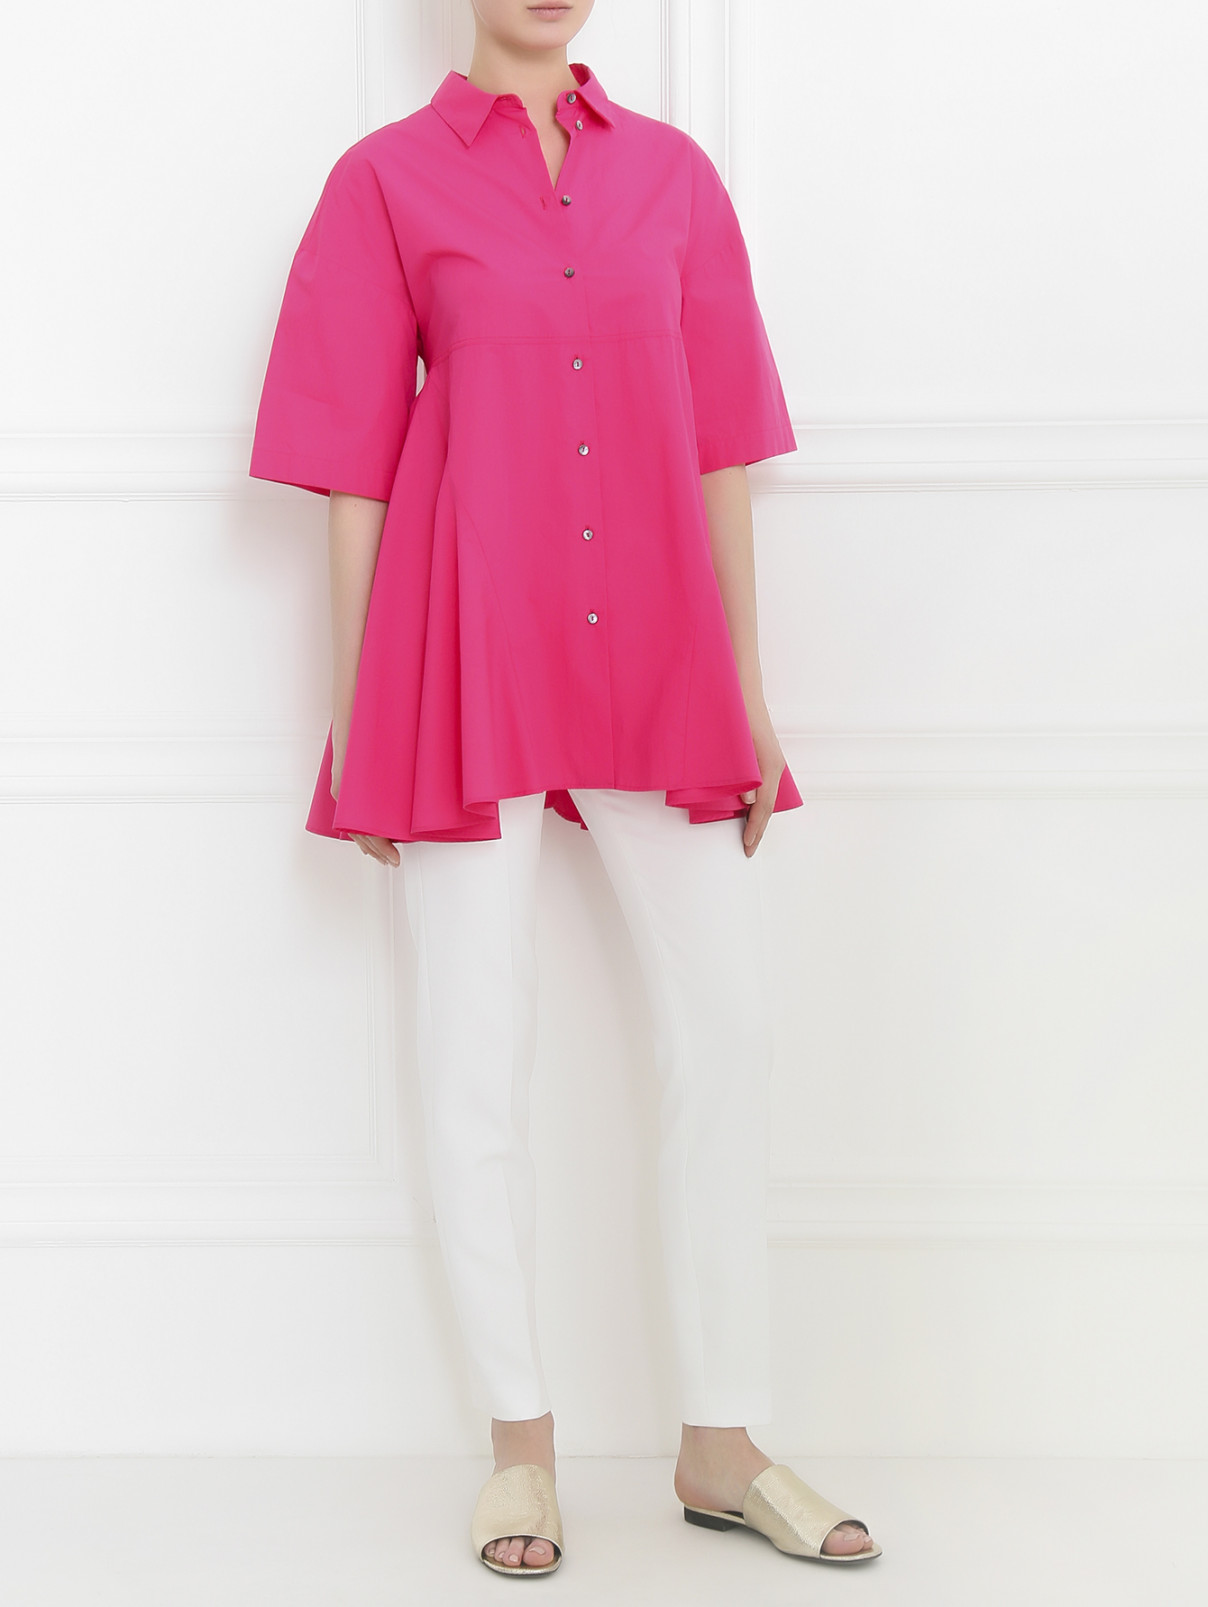 Рубашка из хлопка с коротким рукавом Antonio Marras  –  Модель Общий вид  – Цвет:  Розовый